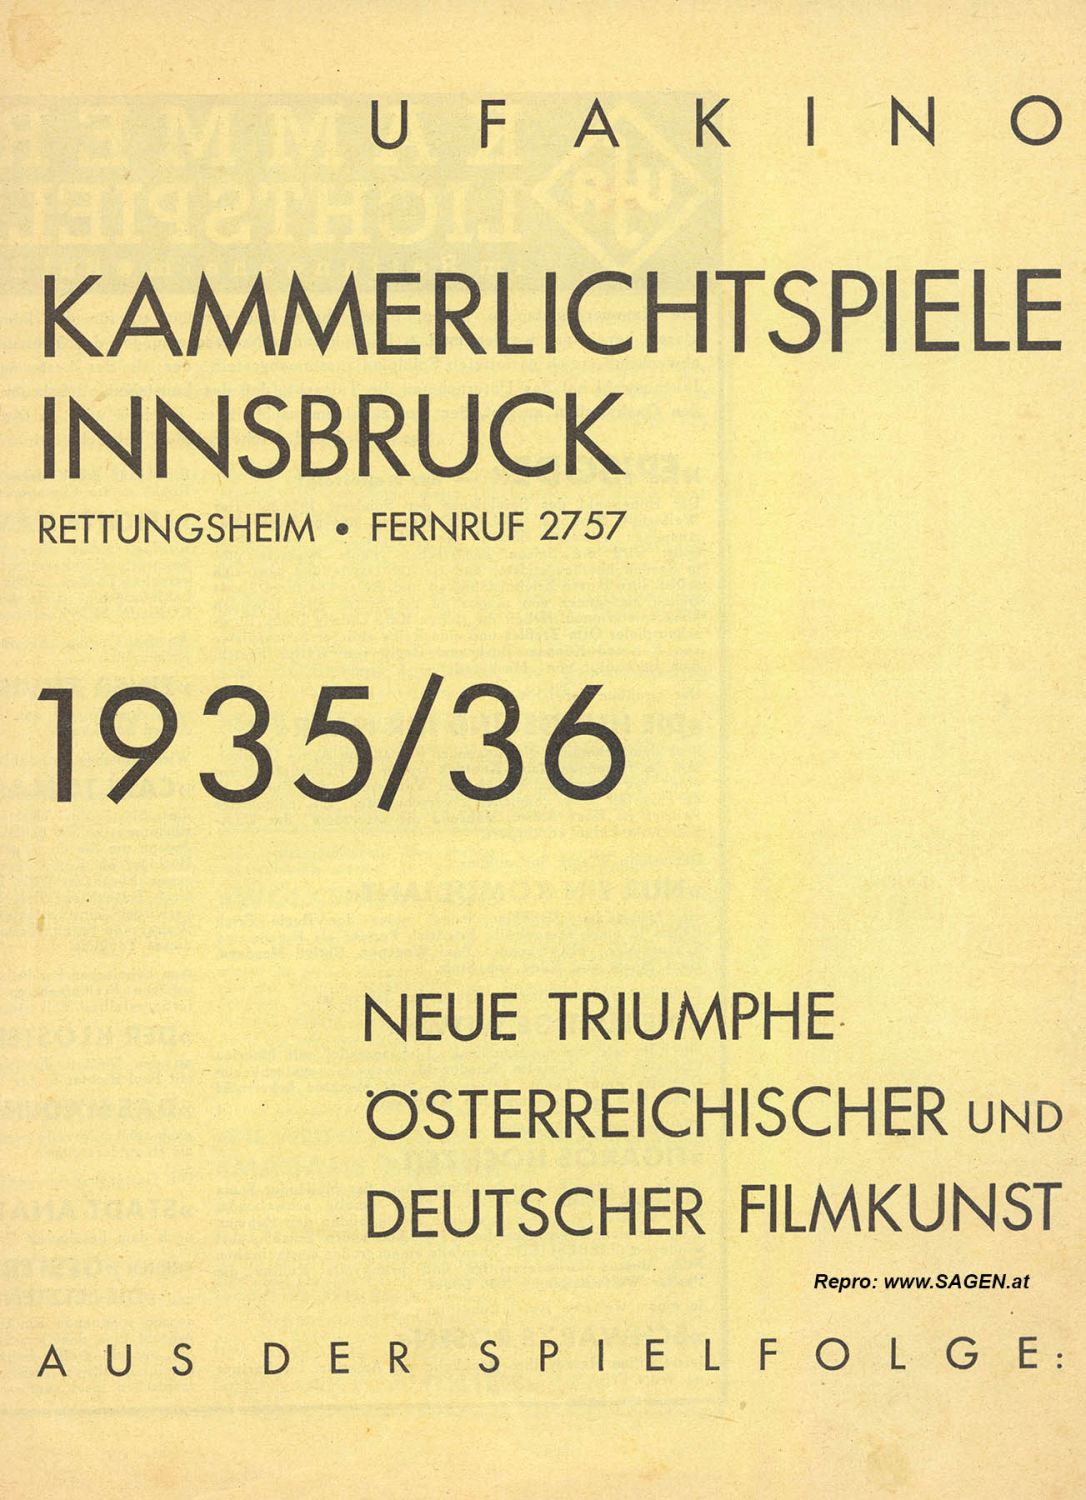 Kammerlichtspiele Innsbruck 1935/36